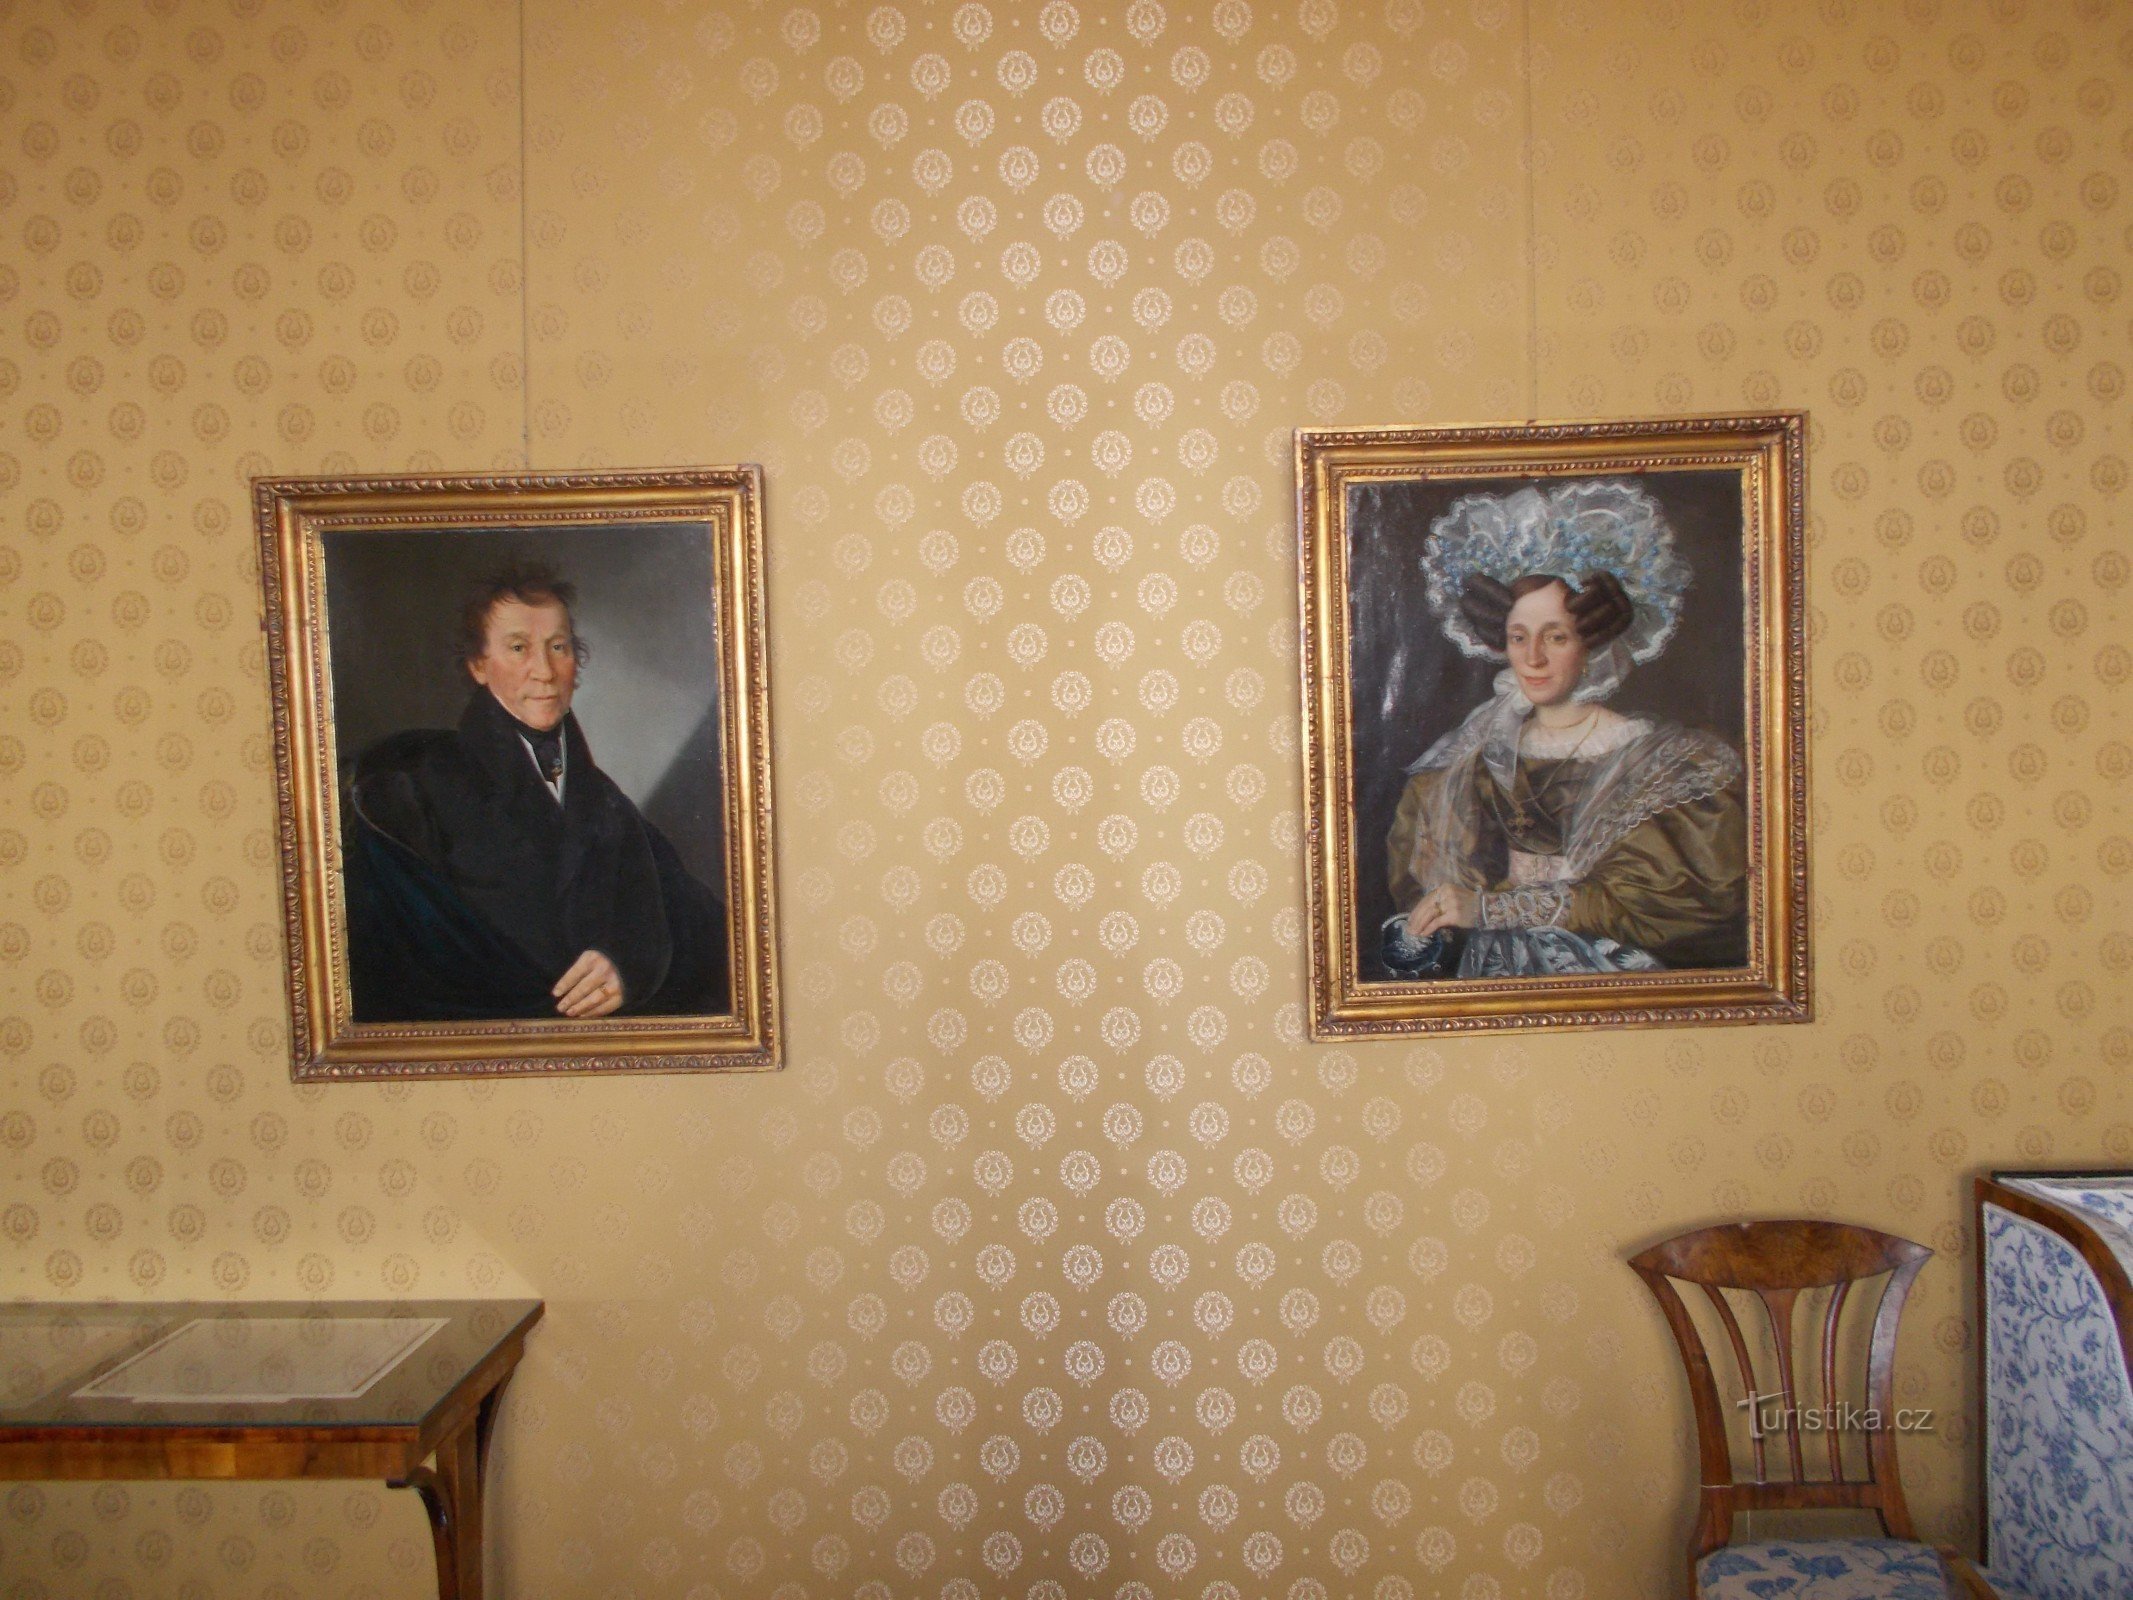 chân dung của cha mẹ Bedřich Smetana